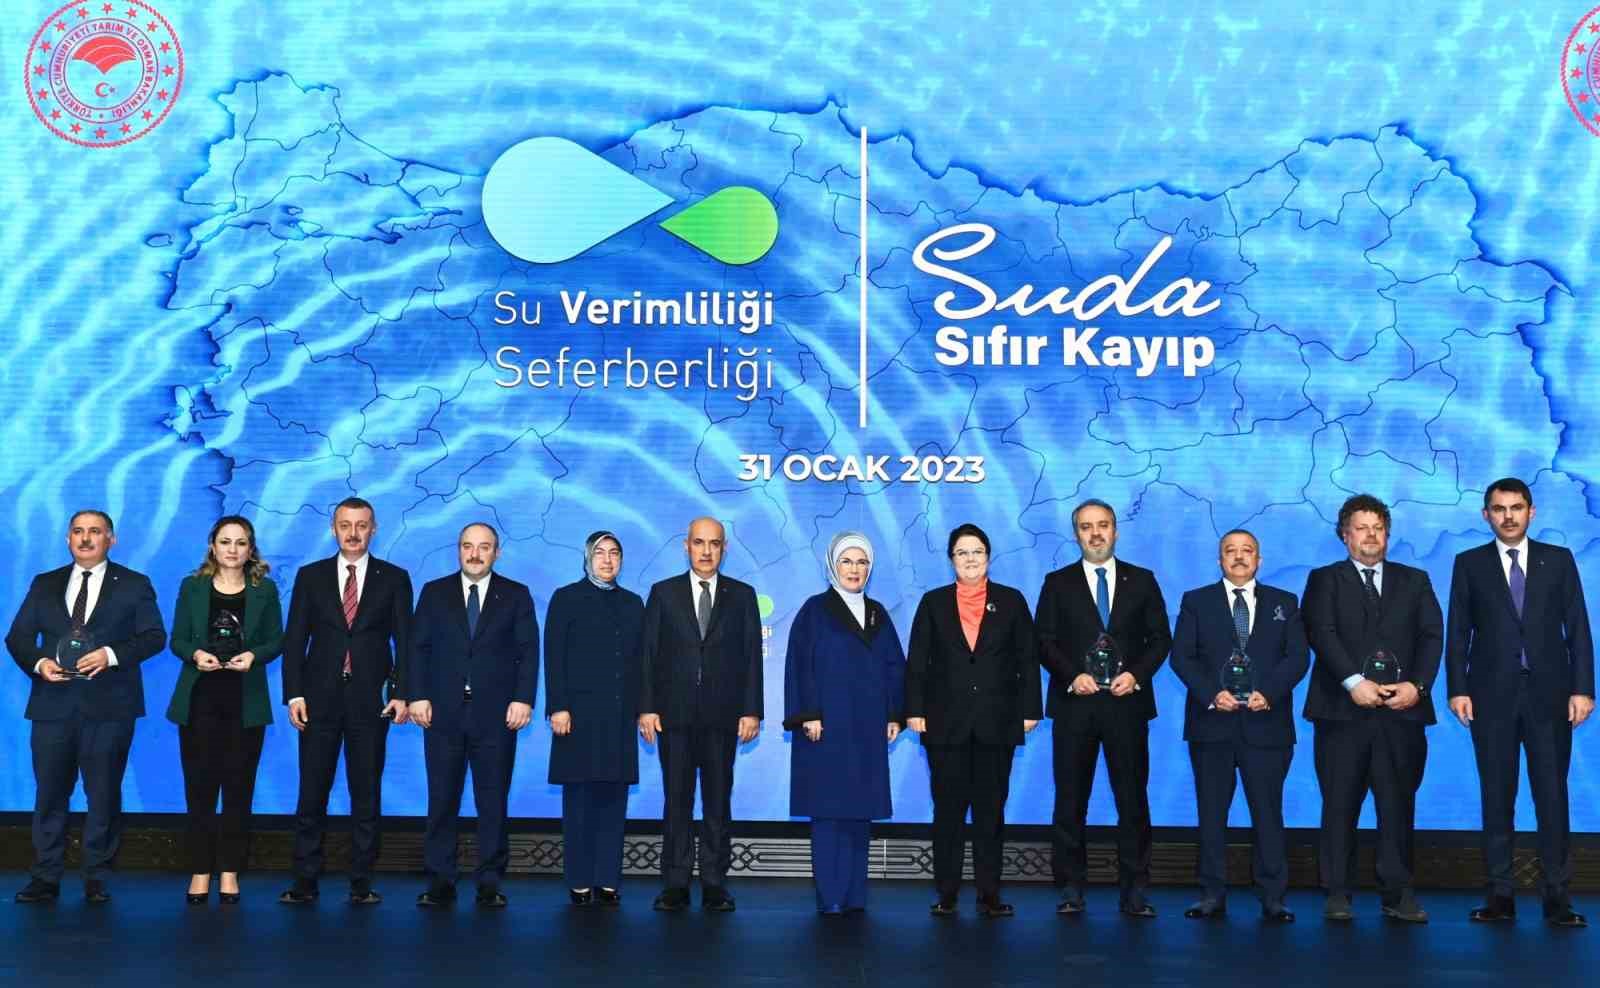 Bursa su verimliliğinde zirvede...Ödülü Emine Erdoğan verdi